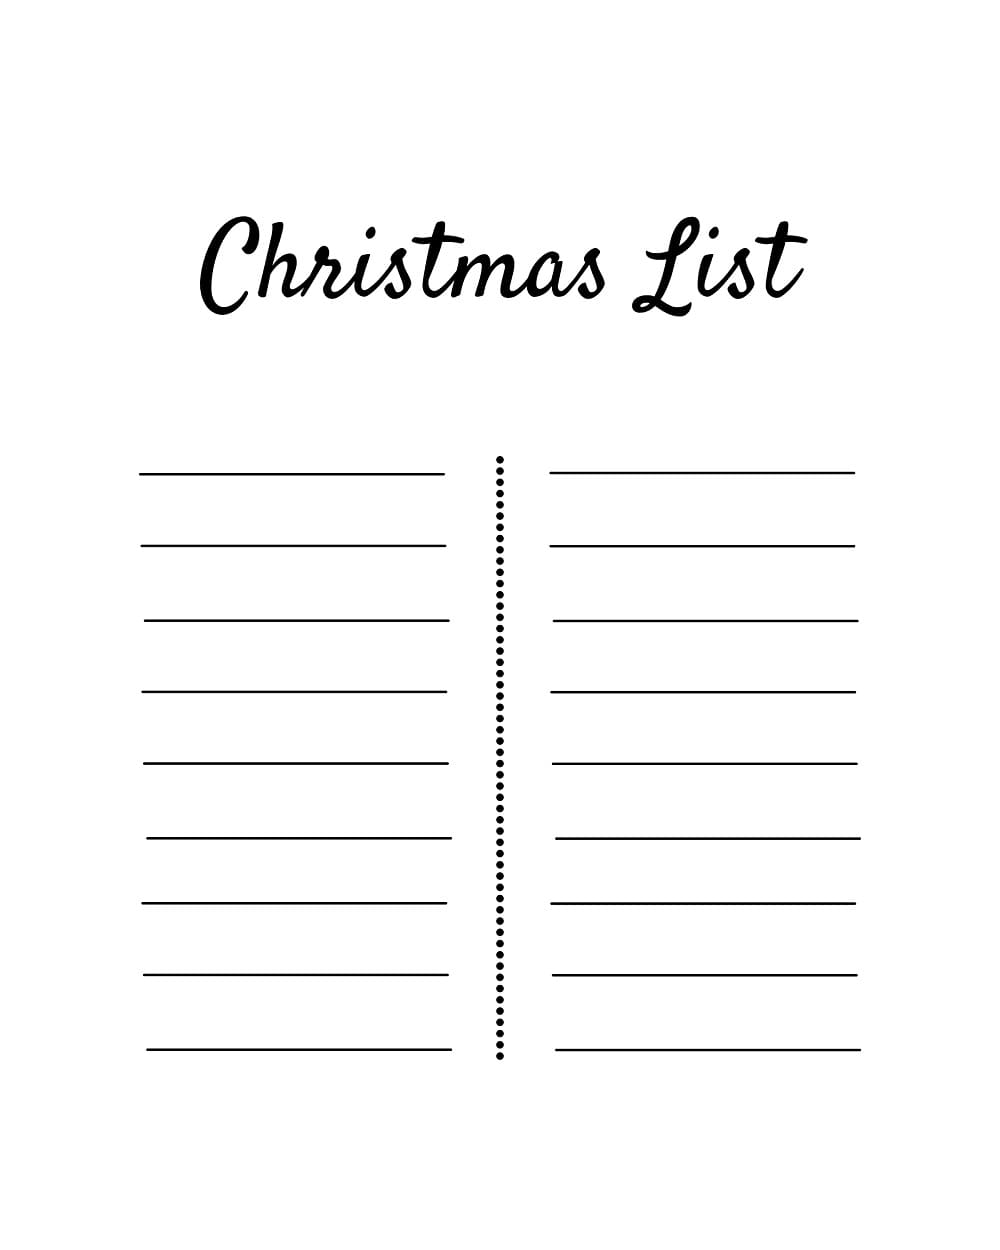 Printable Christmas List Template Photos